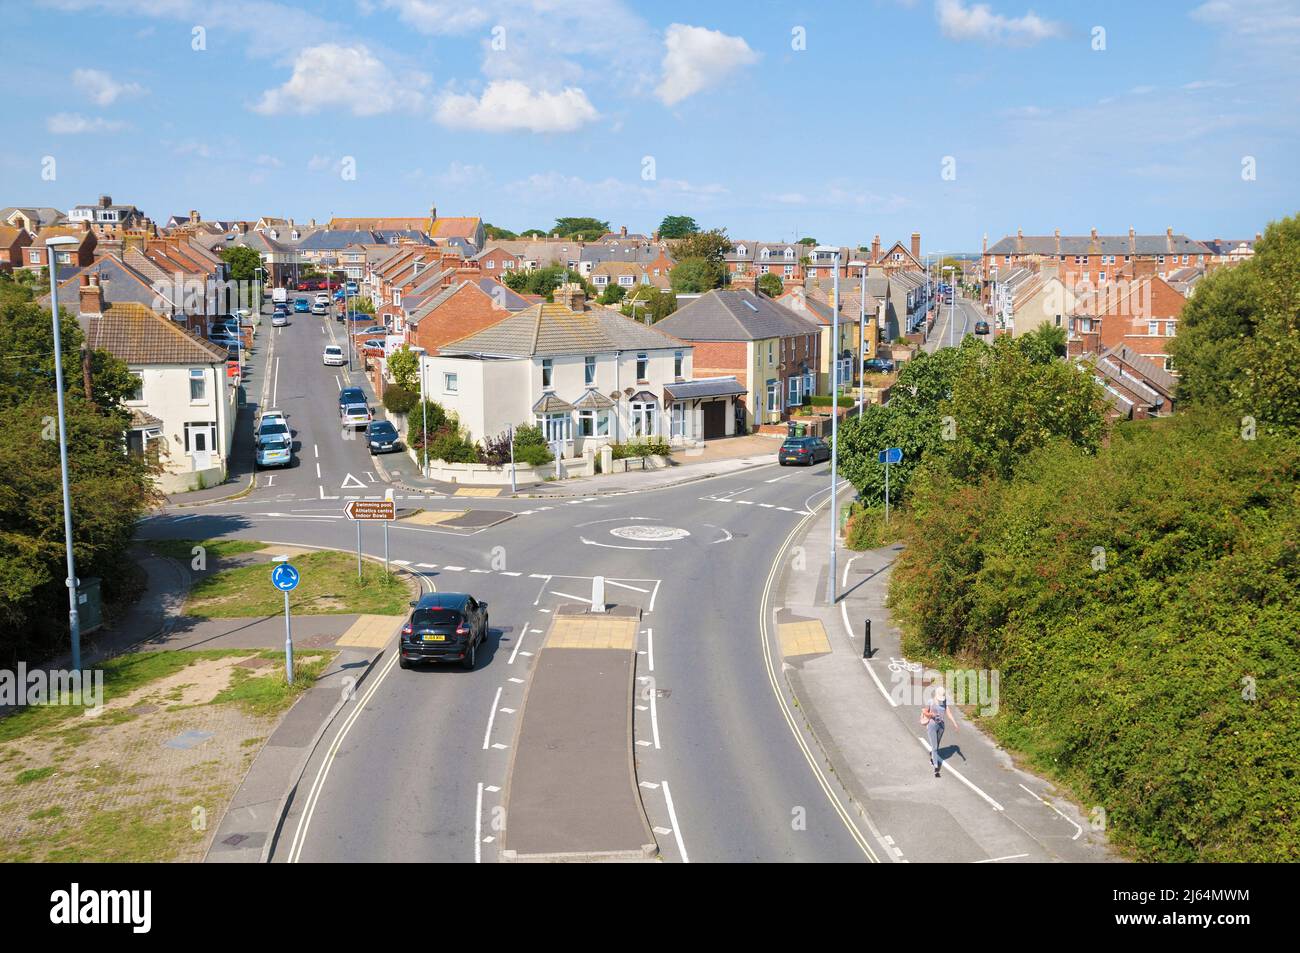 Vista rialzata di strade residenziali e case semi-indipendenti con mini-rotonda e incrocio stradale alla periferia di Weymouth, Dorset, Inghilterra, Regno Unito Foto Stock